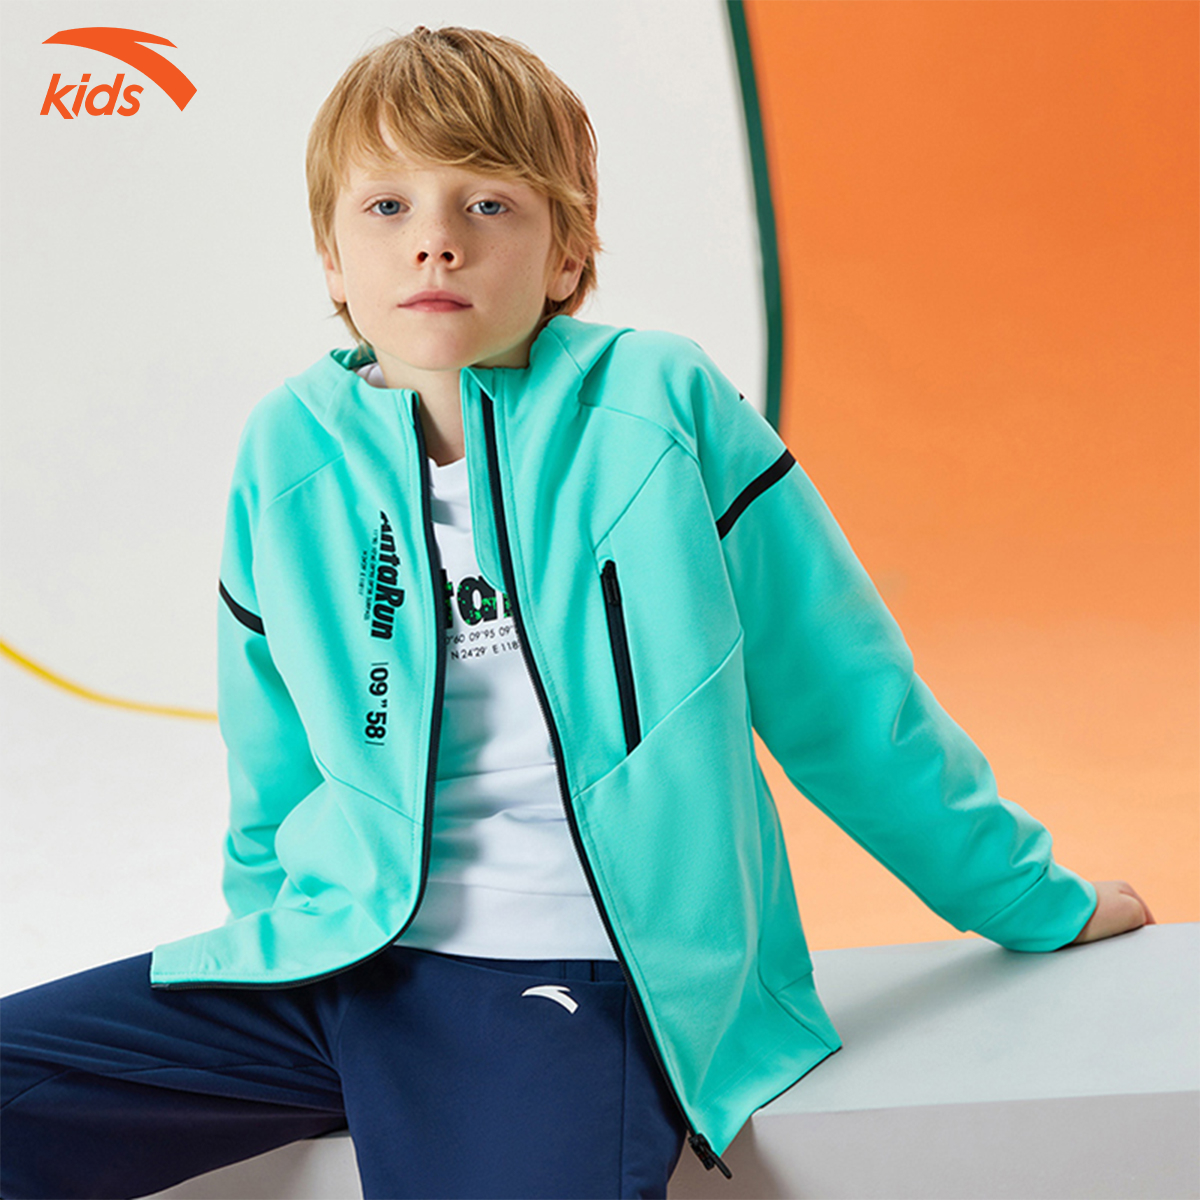 Áo khoác bé trai phối màu thời trang Anta Kids 352135707, chống nước, cản gió